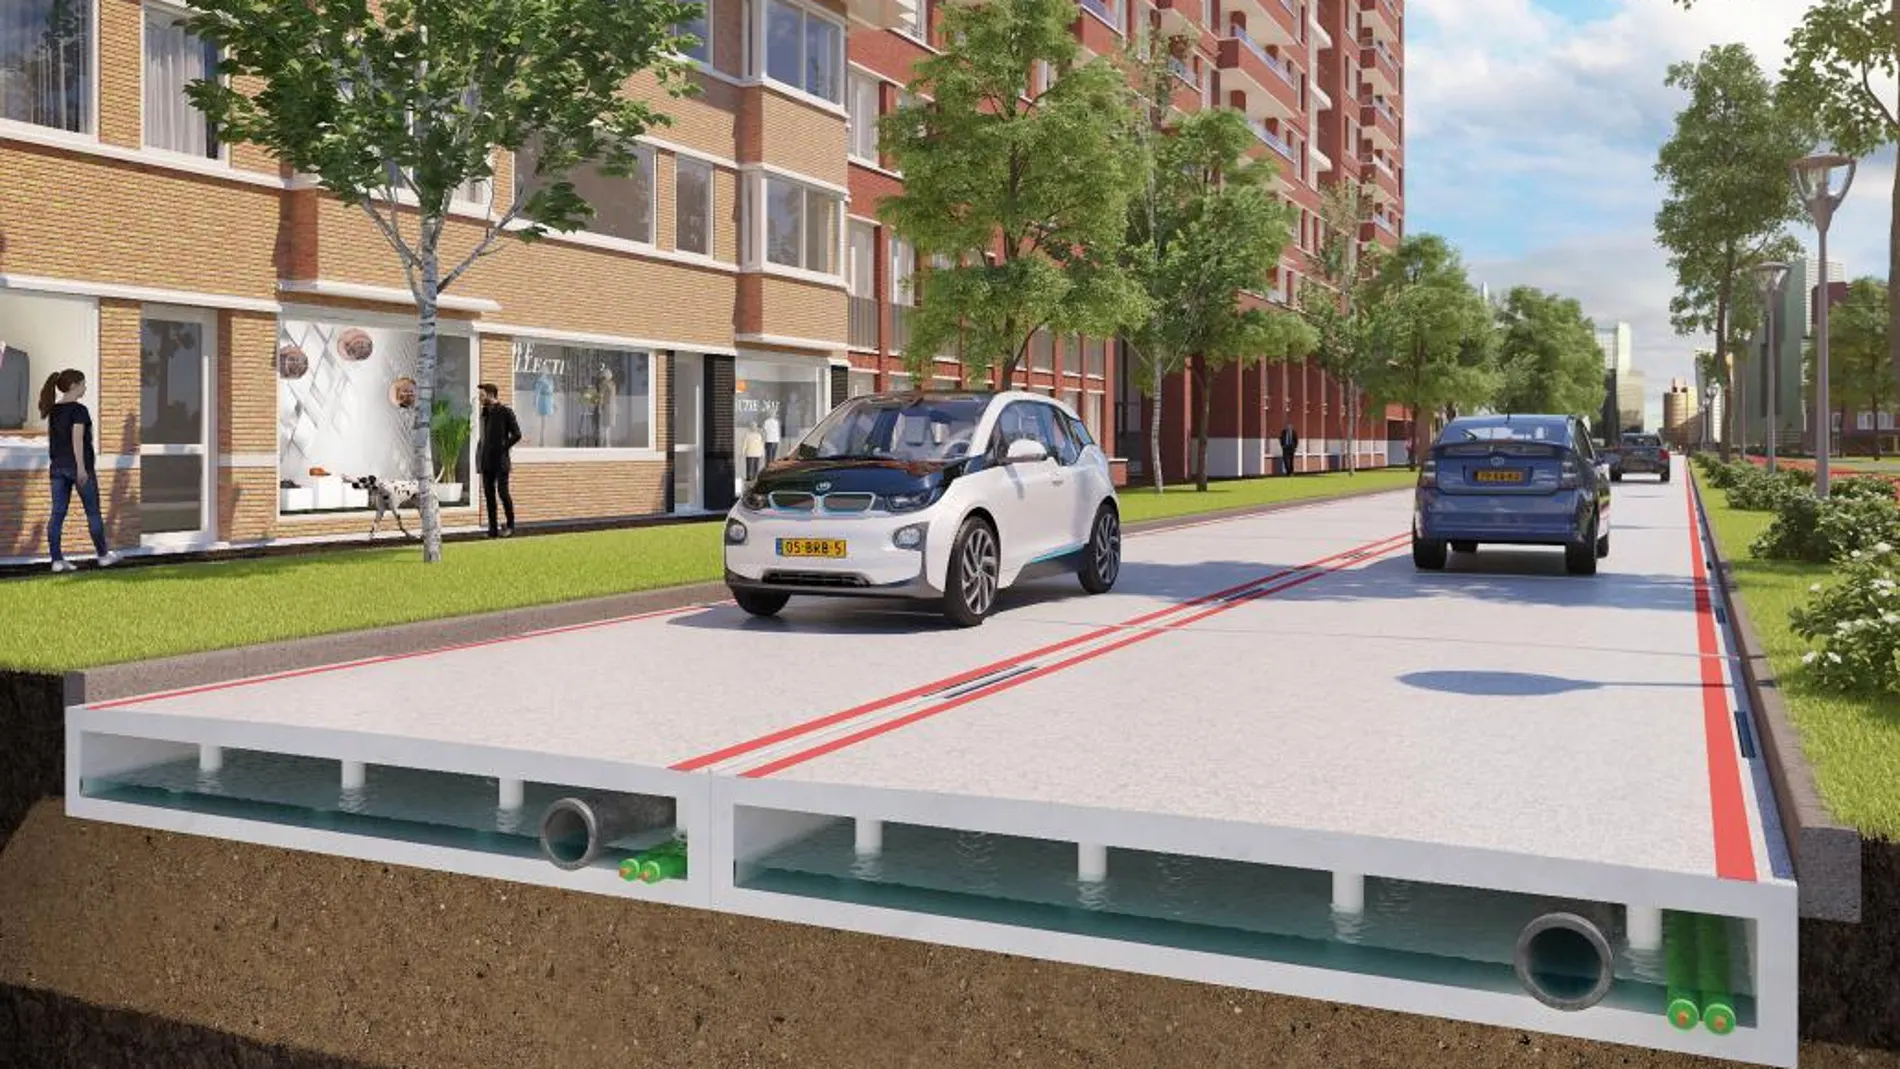 Fotografía facilitada por por KWS. Holanda prevé construir a finales de 2017 la primera carretera fabricada a partir de plástico reciclado